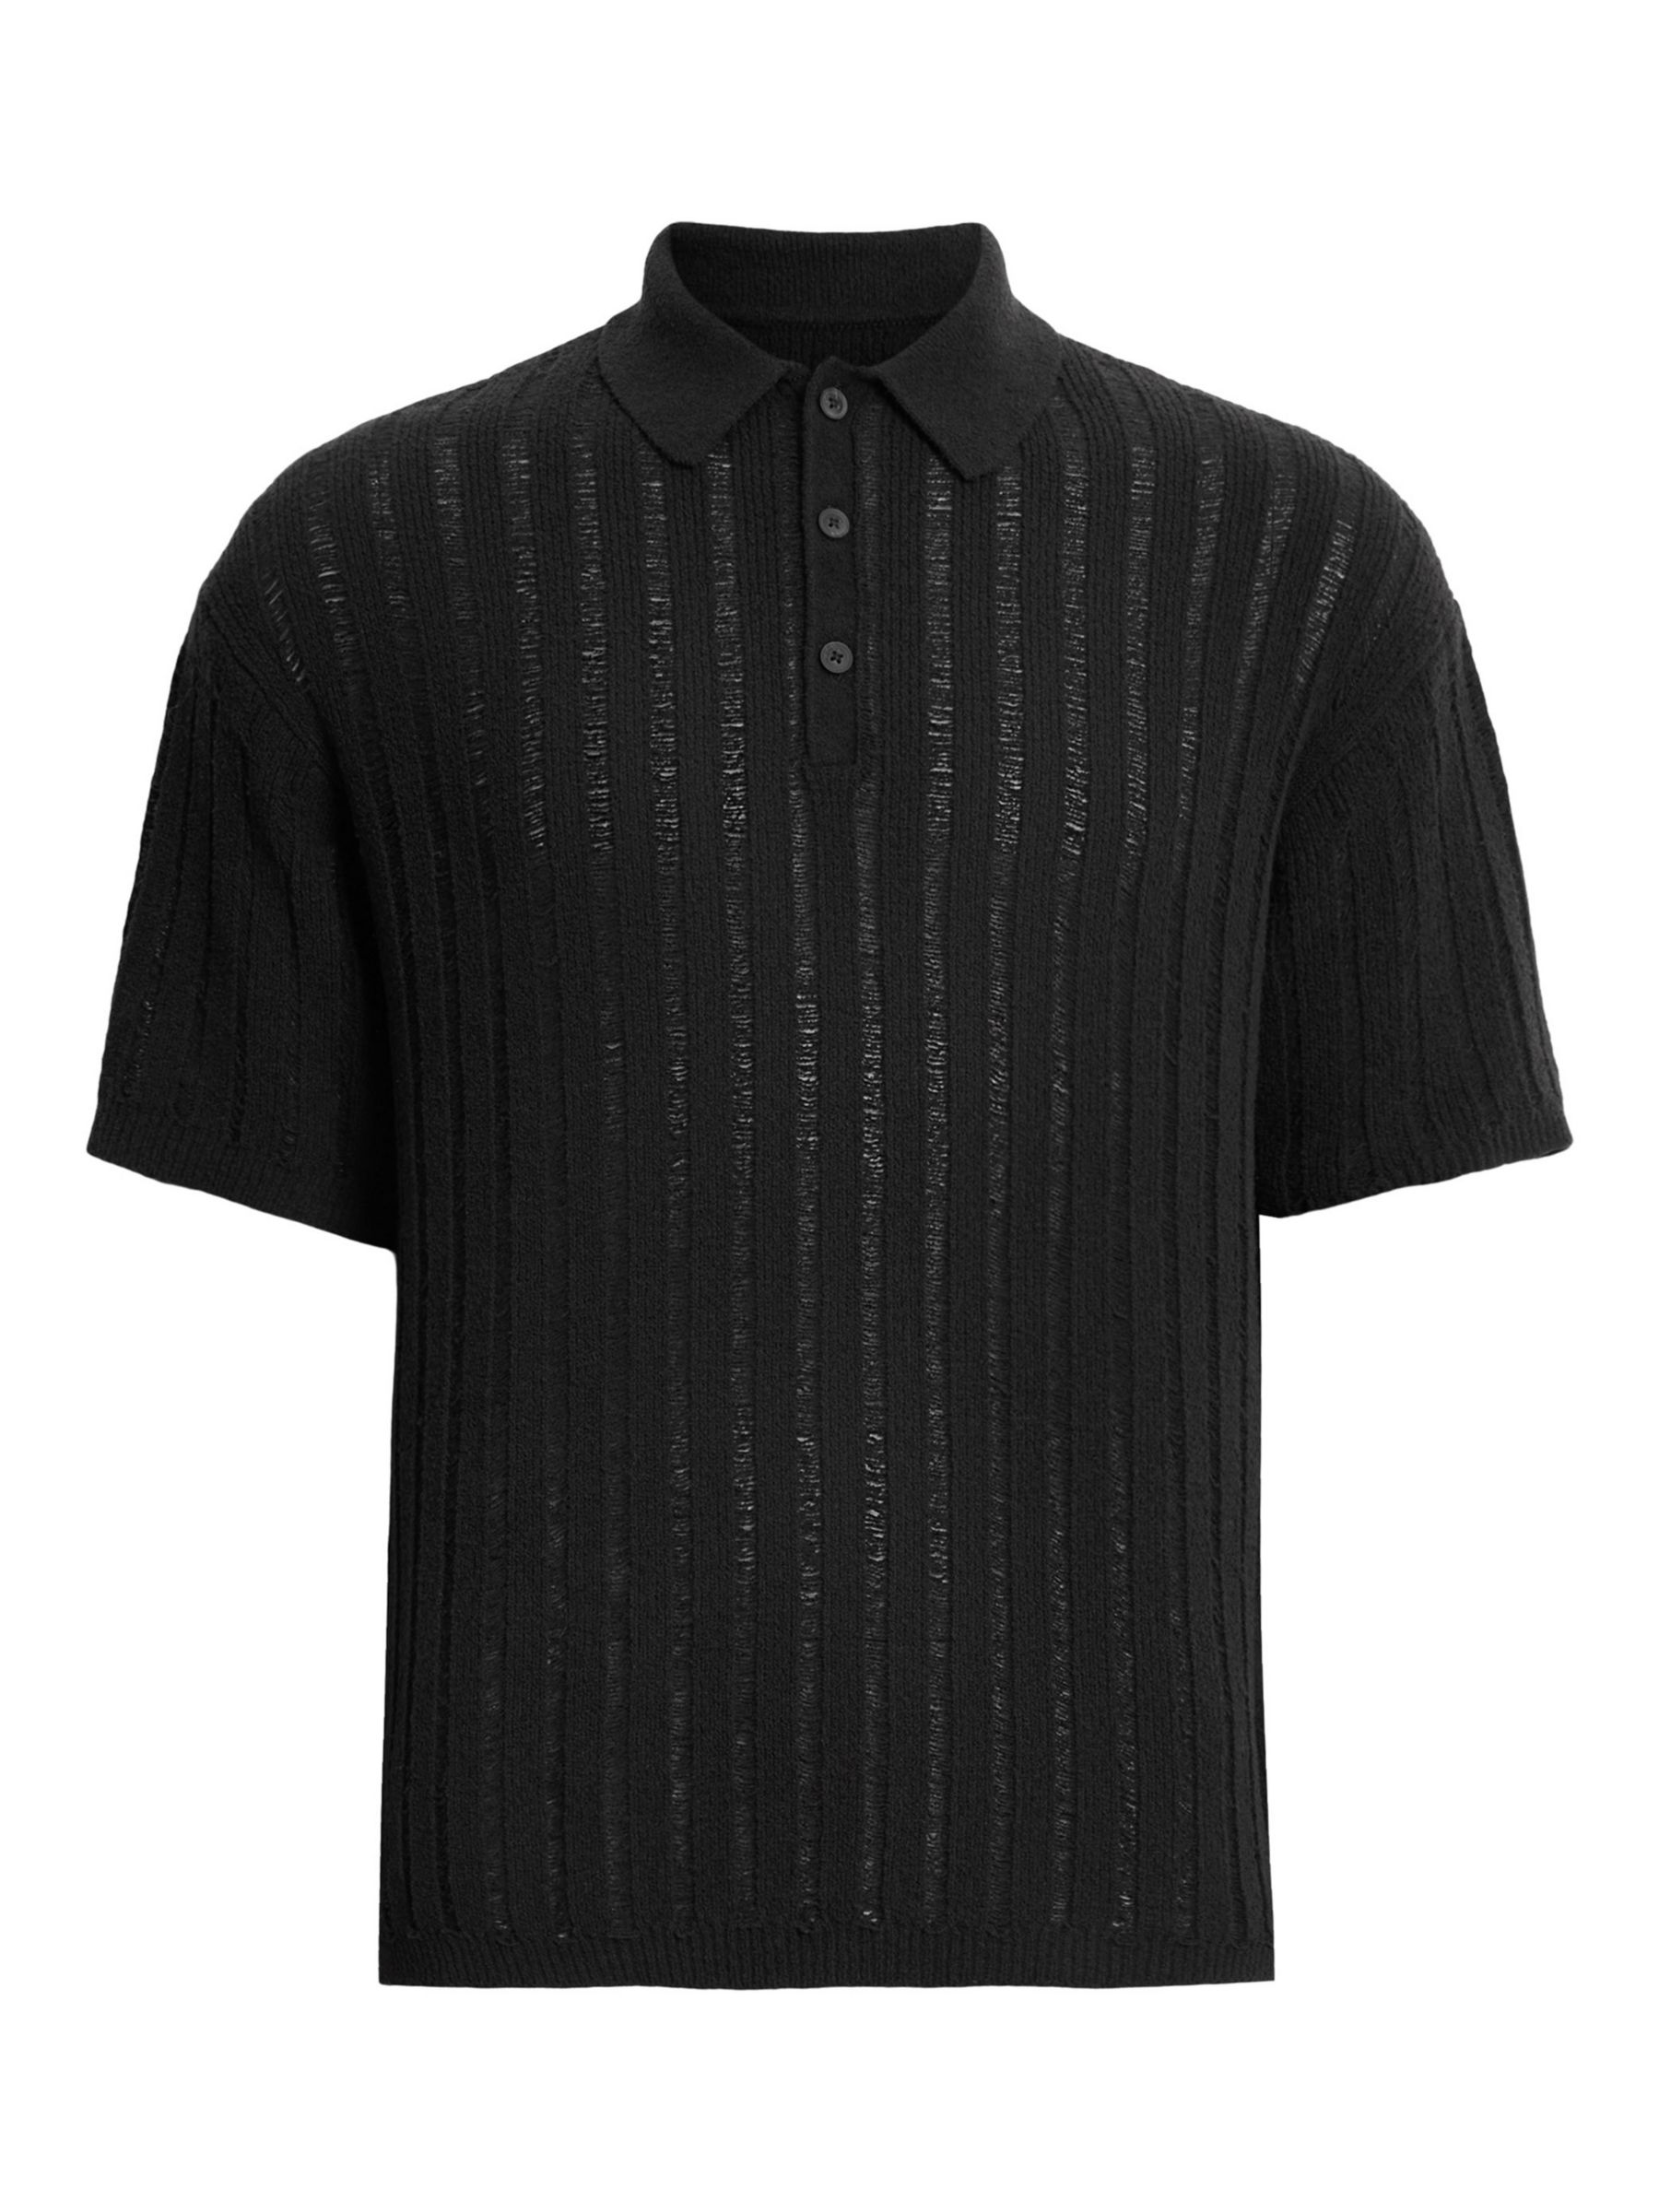 AllSaints Miller Short Sleeve Polo Shirt, Black, S